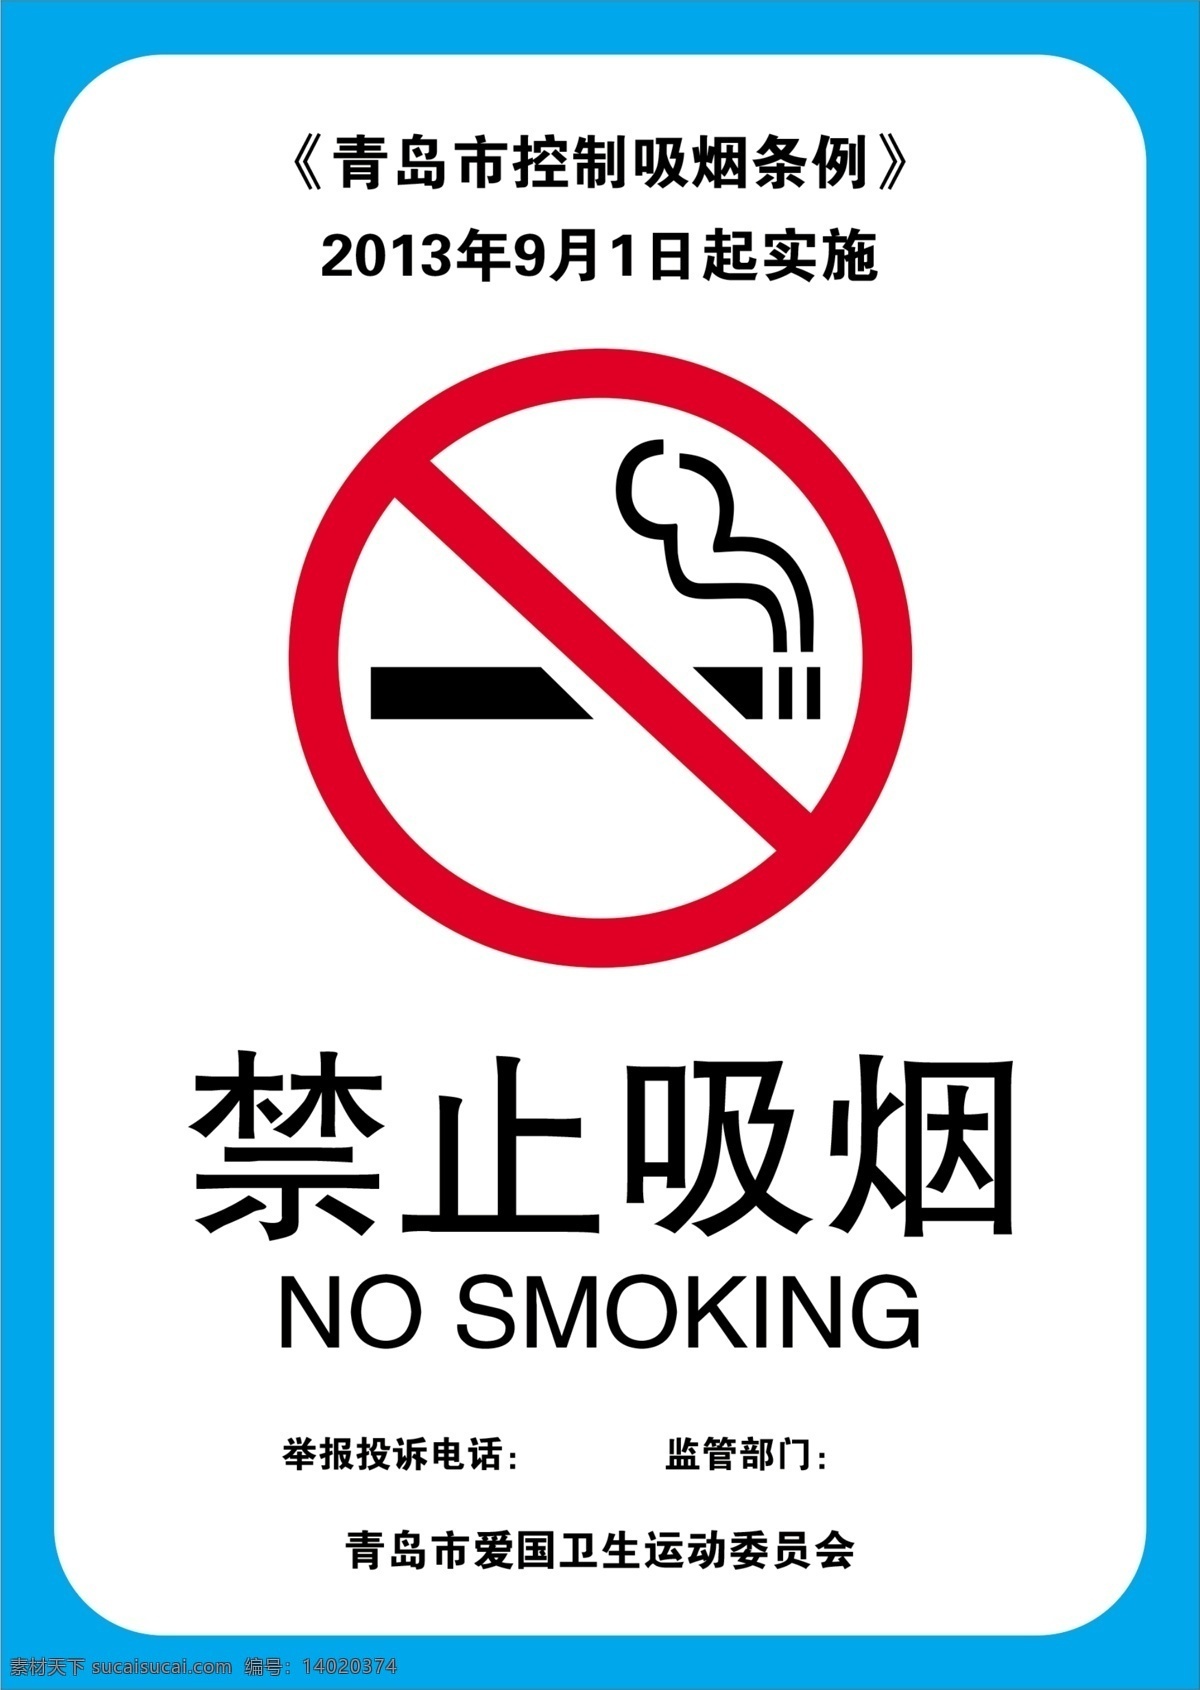 禁止吸烟标志 禁止吸烟样式 禁止吸烟模版 禁止吸烟牌 温馨提示标牌 温馨提示 请勿吸烟 请勿吸烟标志 请勿吸烟样式 请勿吸烟模版 广告制作